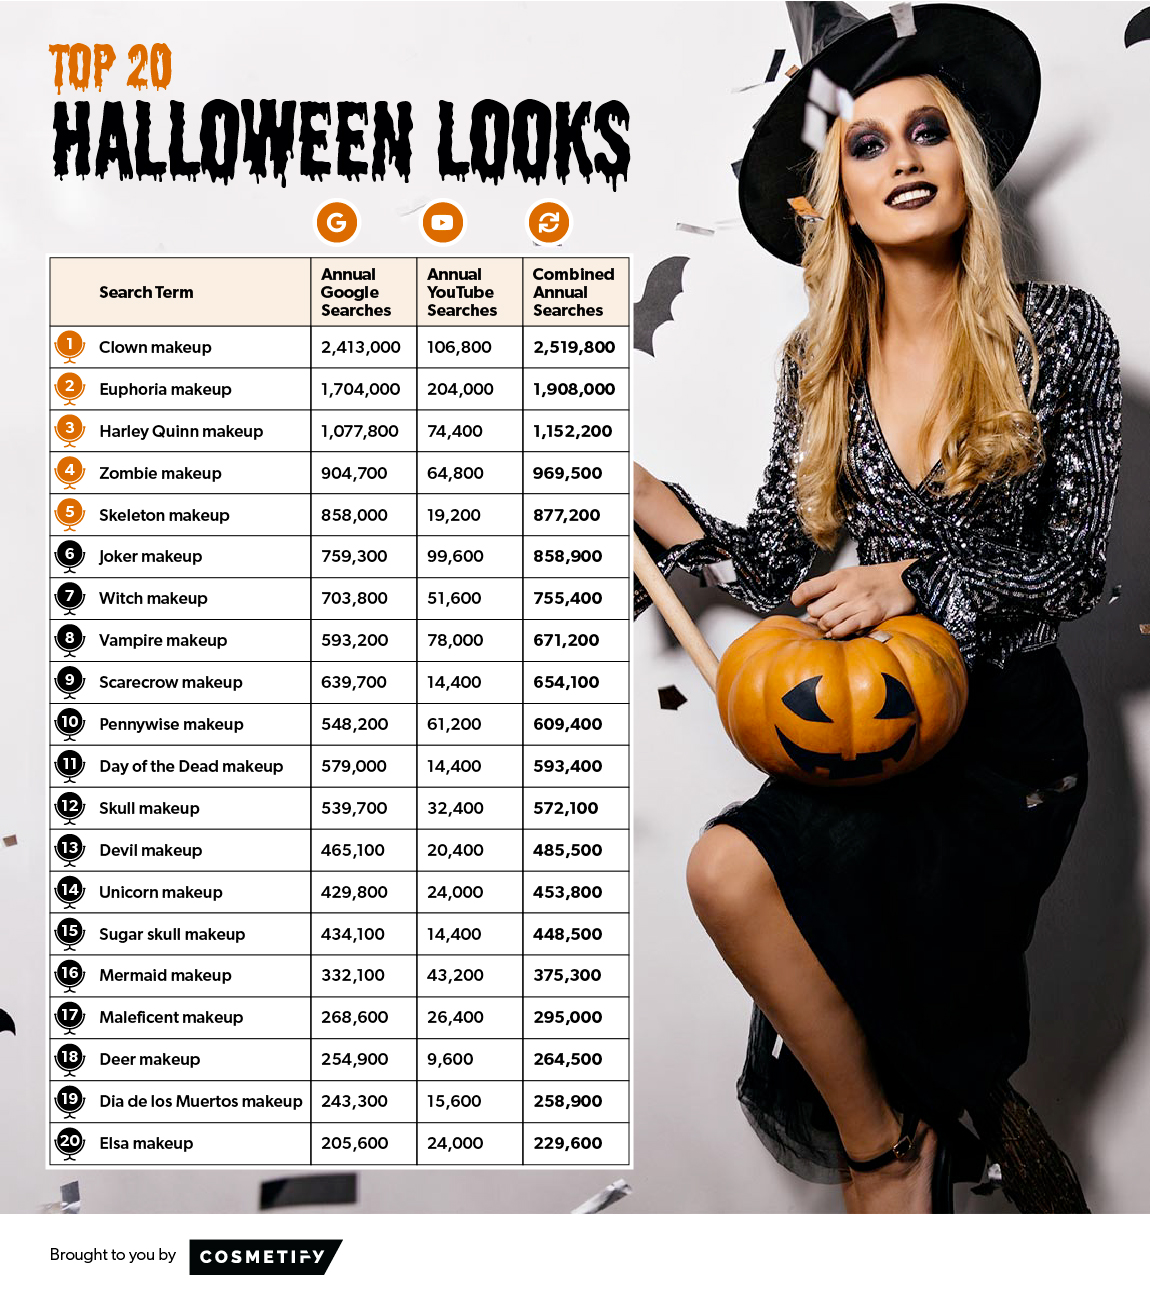 Top 20 Halloween Looks